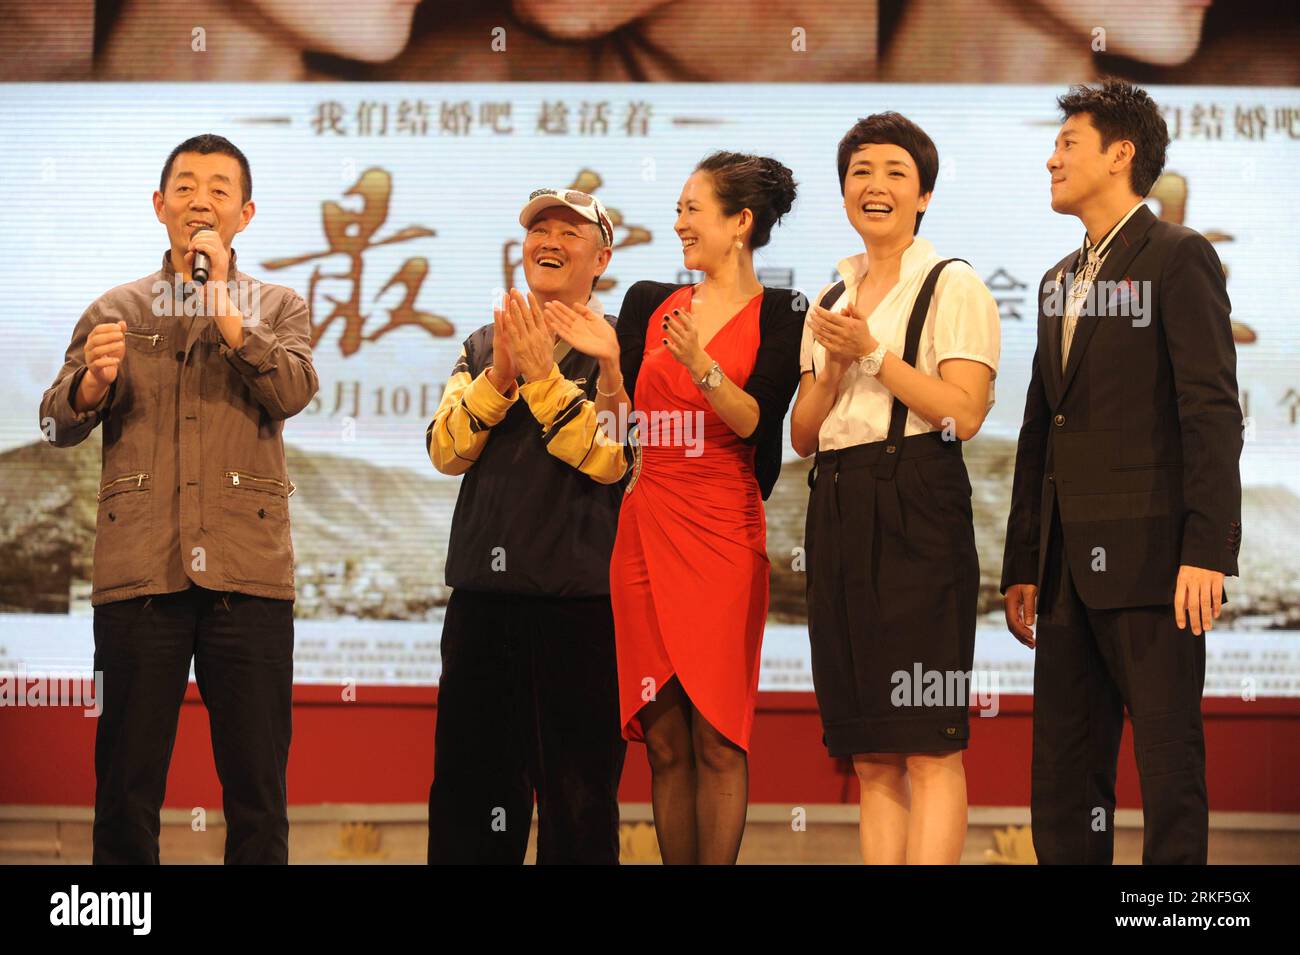 Bildnummer: 55348600 Datum: 14.05.2011 Copyright: imago/Xinhua SHENYANG, 14 maggio 2011 (Xinhua) -- il regista GU Changwei (1st L), gli attori Zhao Benshan (2nd L), Zhang Ziyi (3rd L), Jiang Wenli (2nd R) e Cai Guoqing (1st R) partecipano a un incontro dei fan per promuovere il nuovo film Till Death Do Us Part a Shenyang, capitale della provincia di Liaoning della Cina nord-orientale, 14 maggio 2011. (Xinhua/Wang Jiang) (llp) CHINA-LIAONING-SHENYANG-ENTERTAINMENT-FILM-TILL DEATH DO US PART (CN) PUBLICATIONxNOTxINxCHN Entertainment People Film kbdig xkg 2011 quer o0 Mo shu wai zhuan Bildnummer 55348600 Data 14 05 2011 Copyright Imag Foto Stock